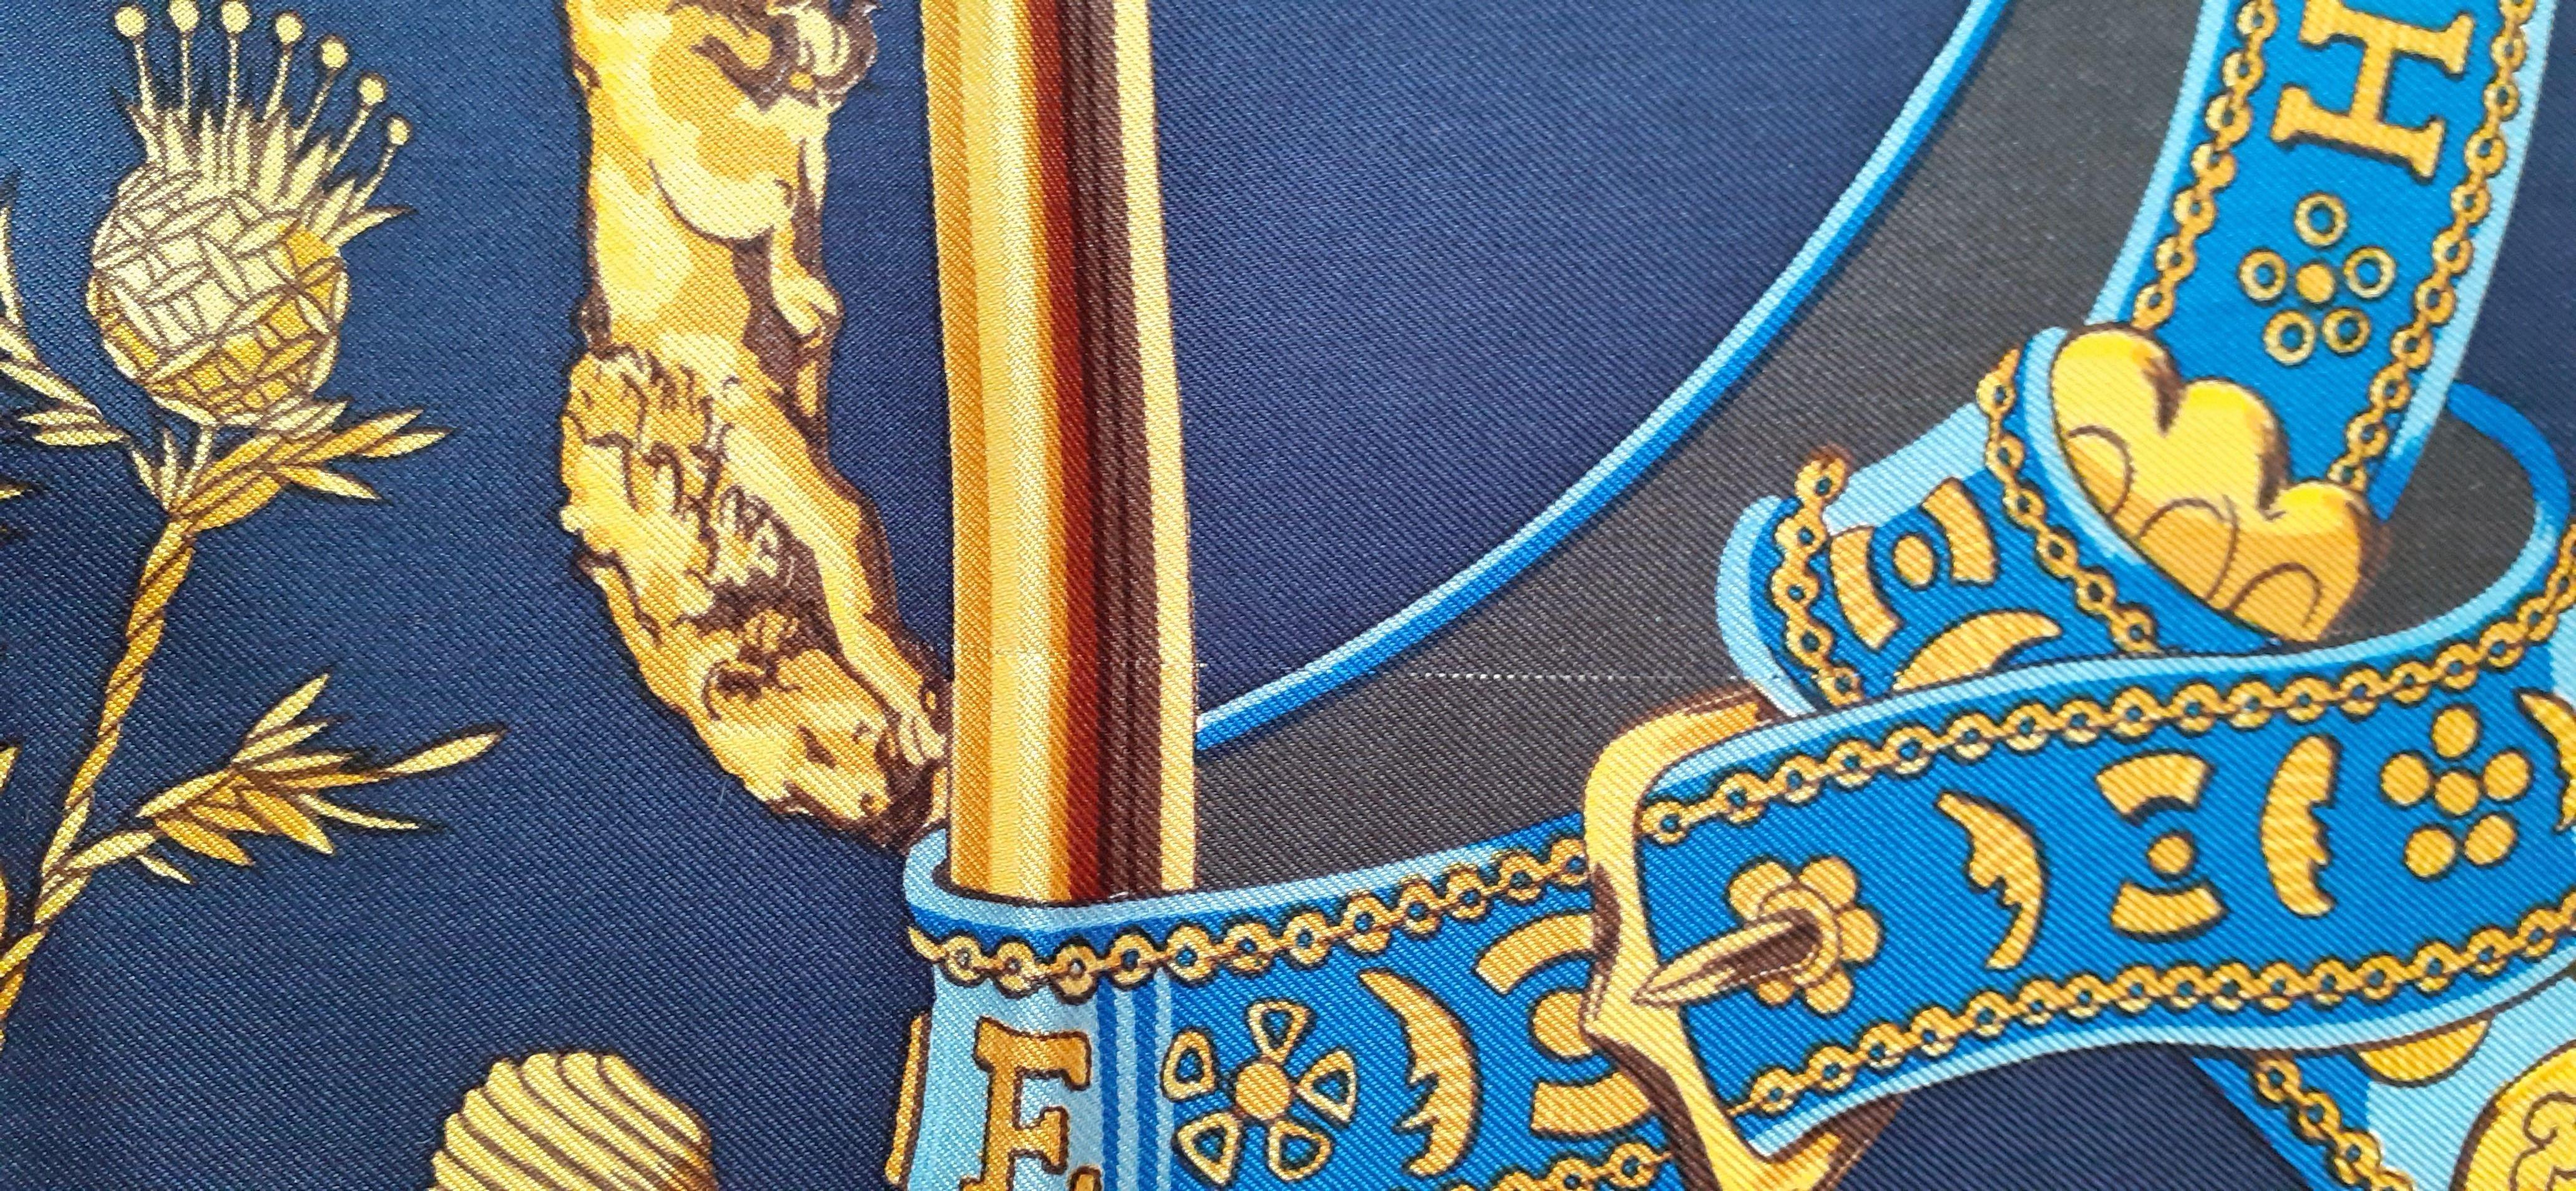 Hermès Scarf Dieu et Mon Droit The Queen's Silver Jubilee 1977 Elizabeth II UK For Sale 7